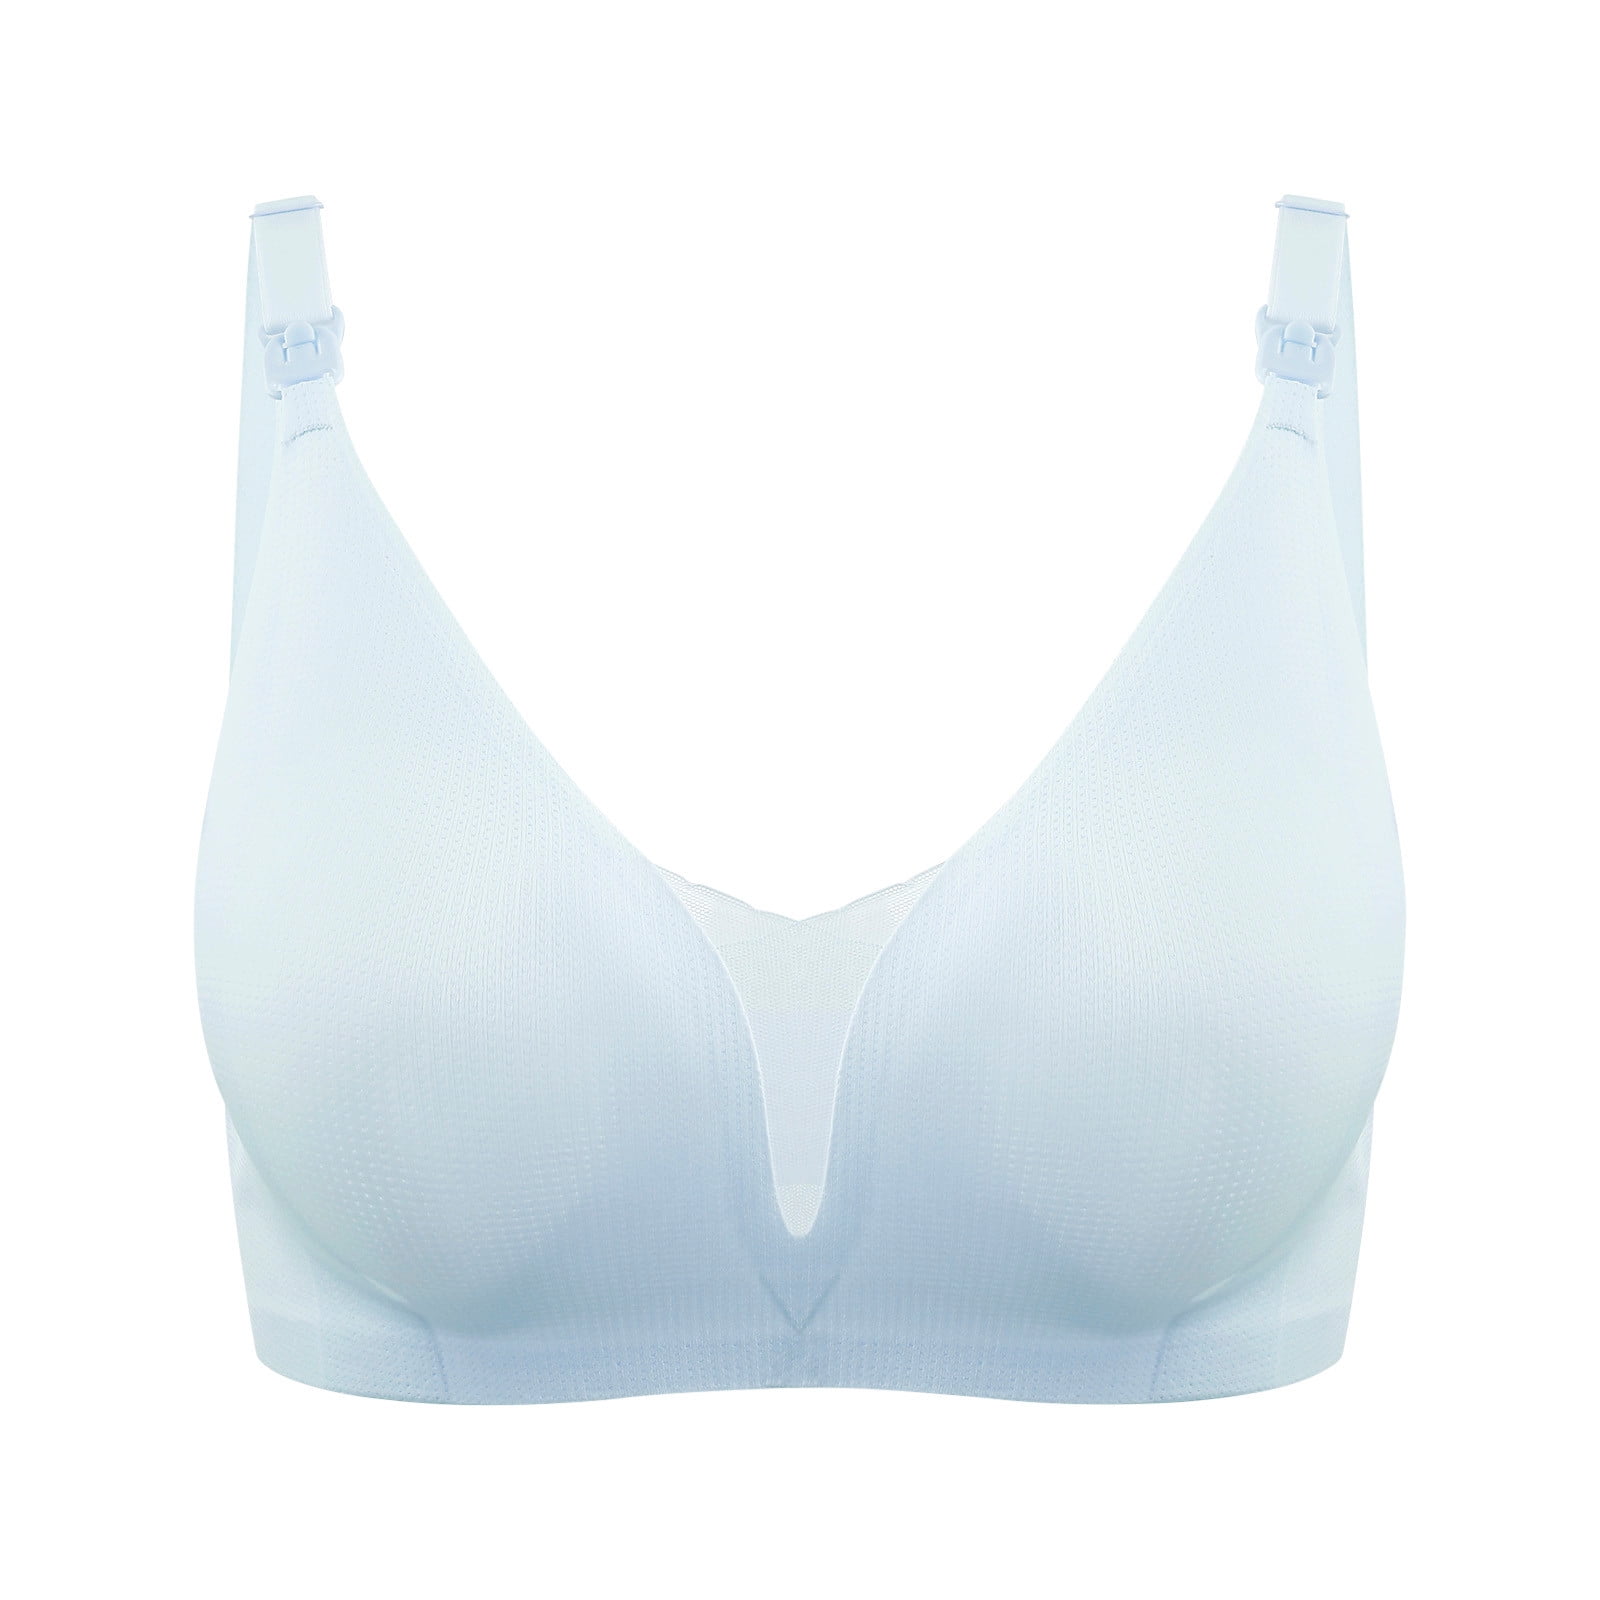 MELDVDIB Nursing Bra Women T-Shirt Bralette Lingerie Underwear Wireless  Padded Seamless Ultra Strap Padded Bras For Women, Gift, Summer Saveings